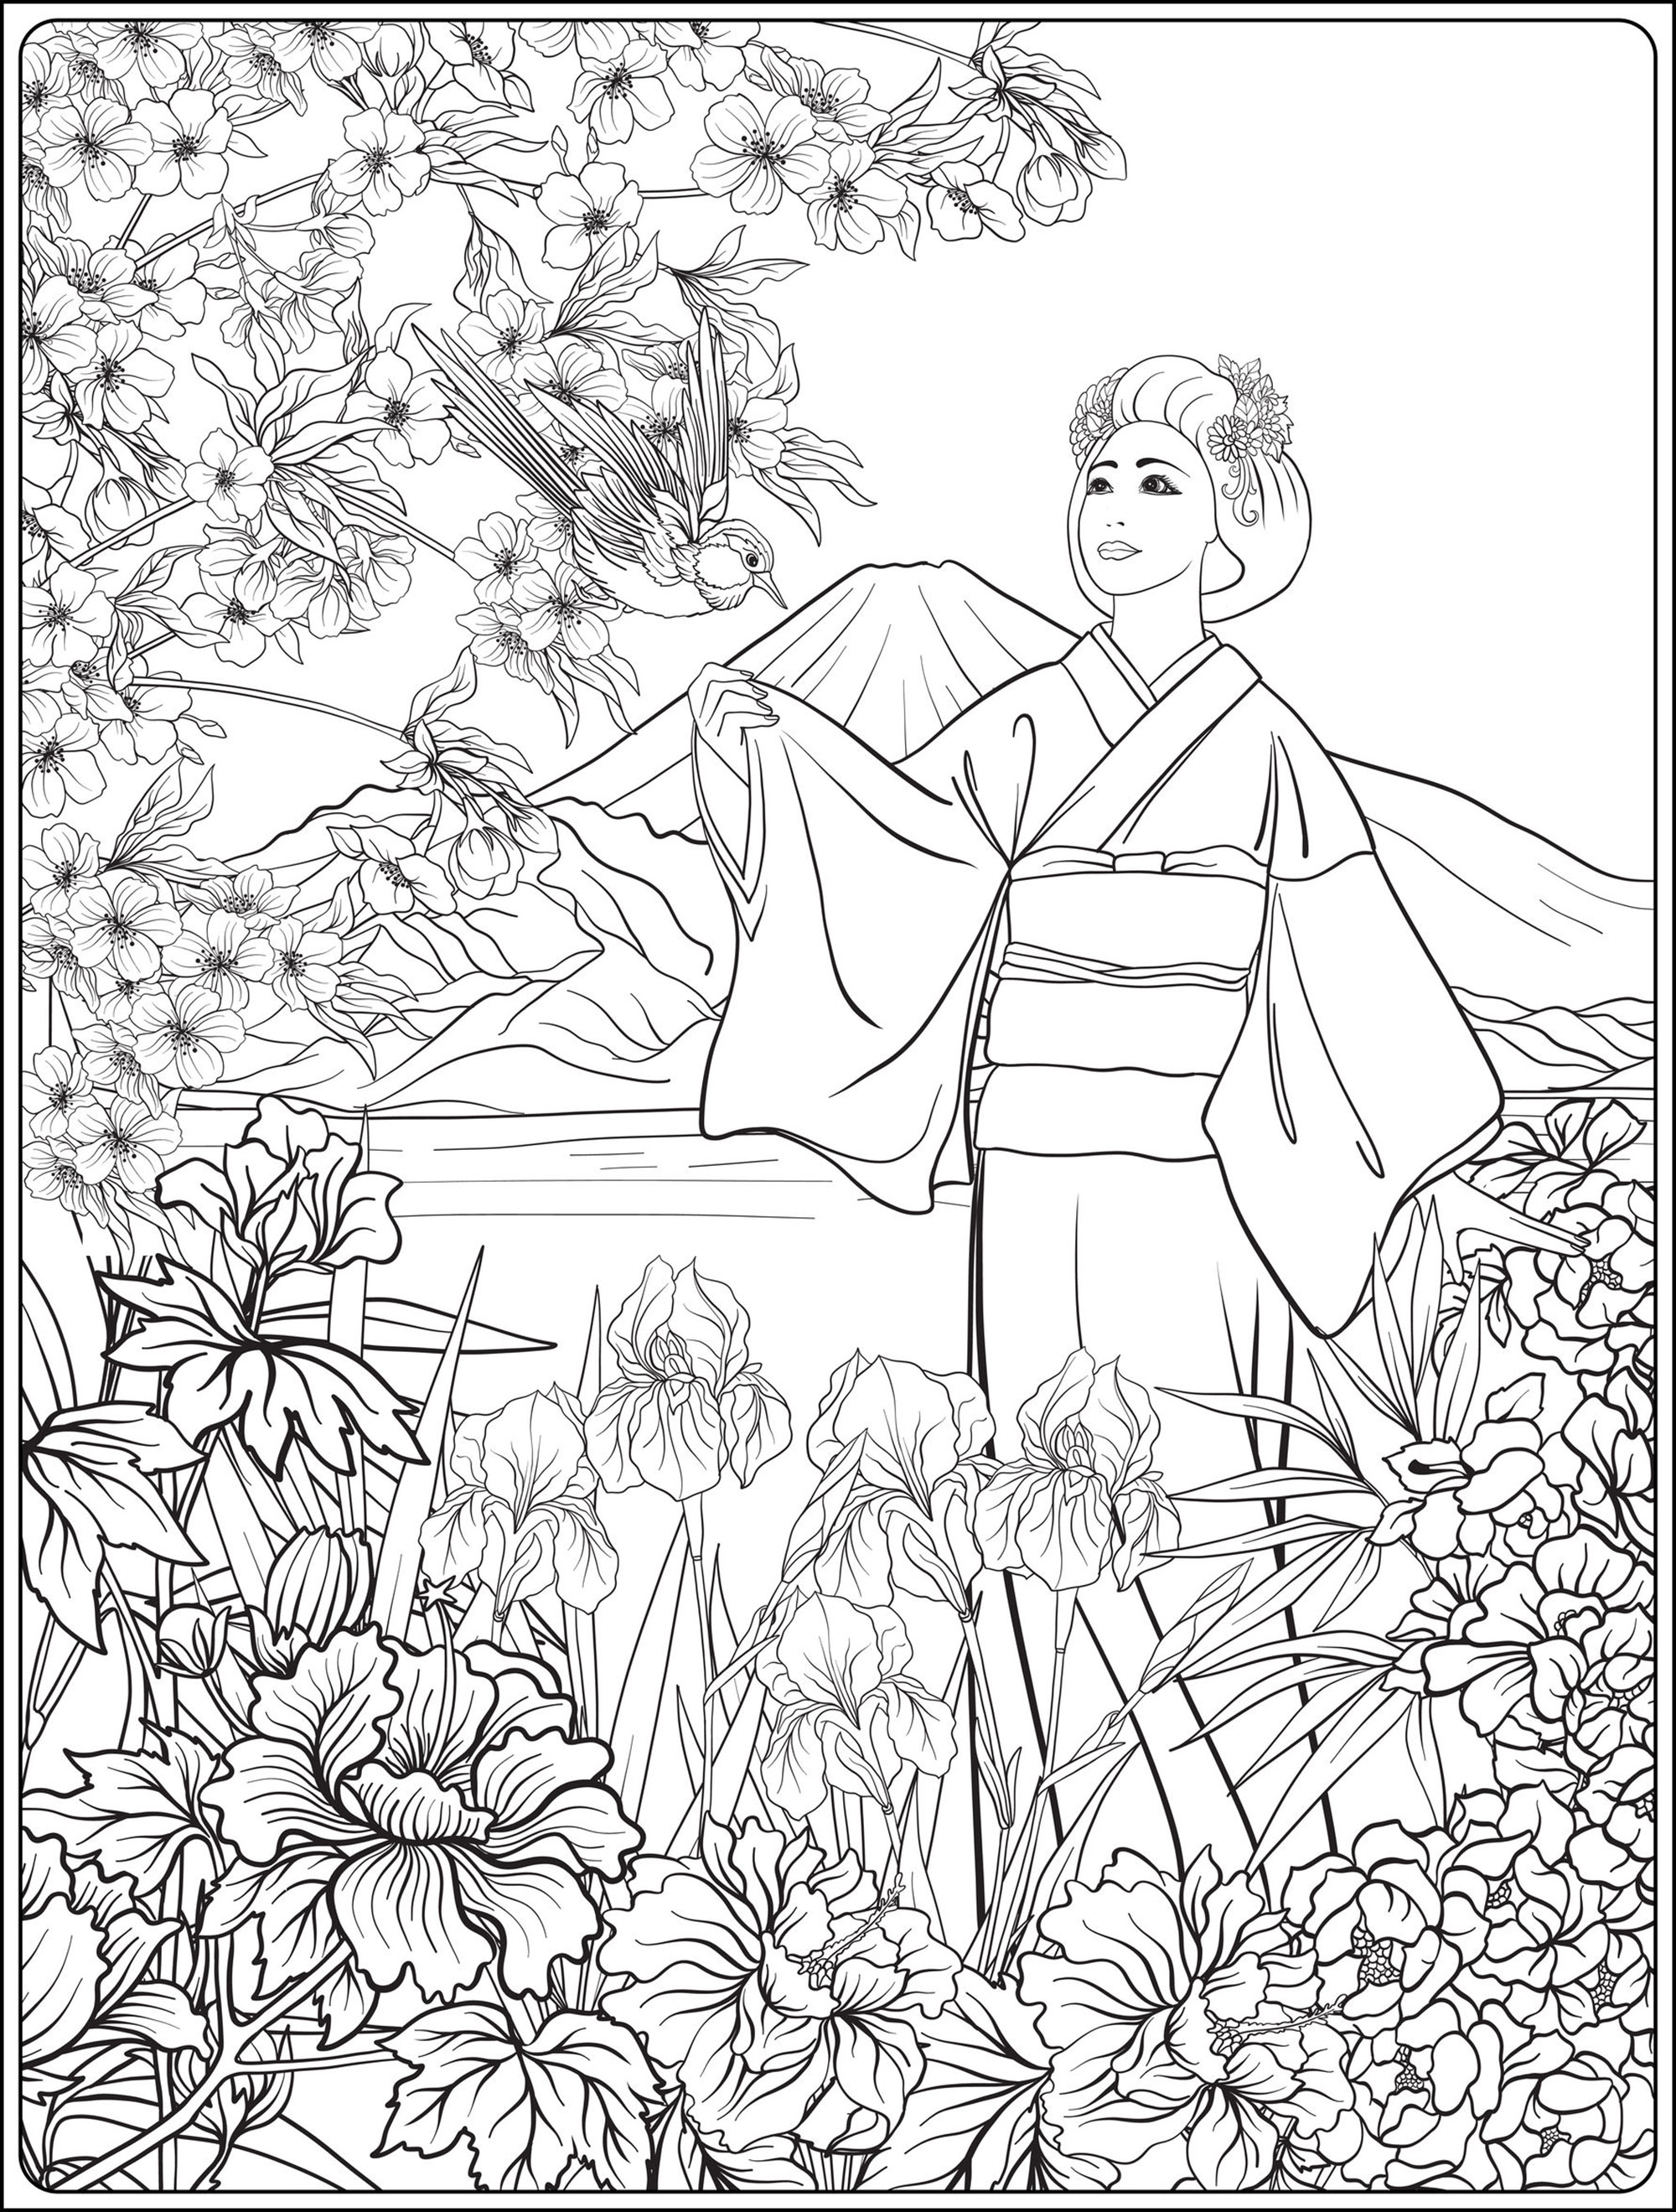 Paysage japonais avec Mont Fuji et mer, avec femme japonaise en kimino, fleurs de tradition et joli un oiseau. Ce coloriage 'Japonaise en kimono et Mont Fuji' est une véritable ode à la culture japonaise. On y voit une femme japonaise vêtue d'un kimono, debout sur un paysage japonais avec le Mont Fuji et la mer. Elle est entourée de fleurs traditionnelles et d'un joli oiseau, Artiste : Elena Besedina   Source : 123rf